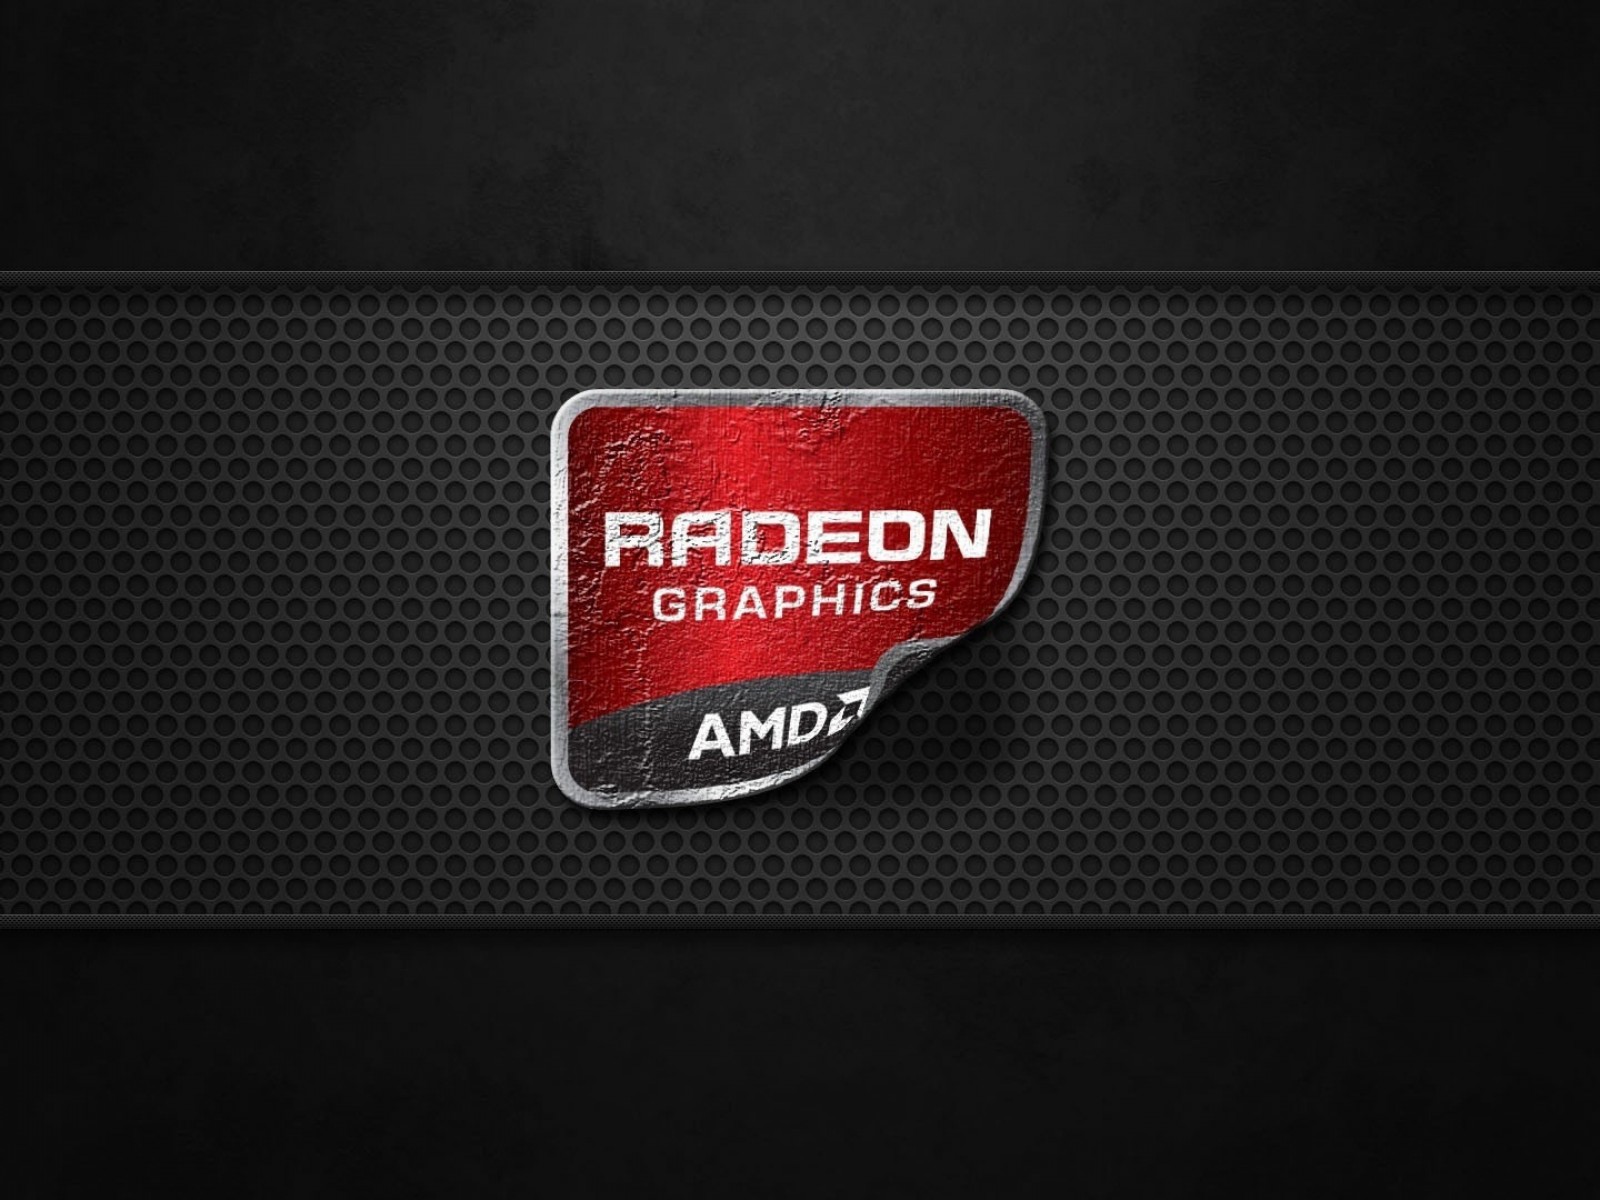 AMD Radeon Graphics Wallpaper for Desktop 1600x1200